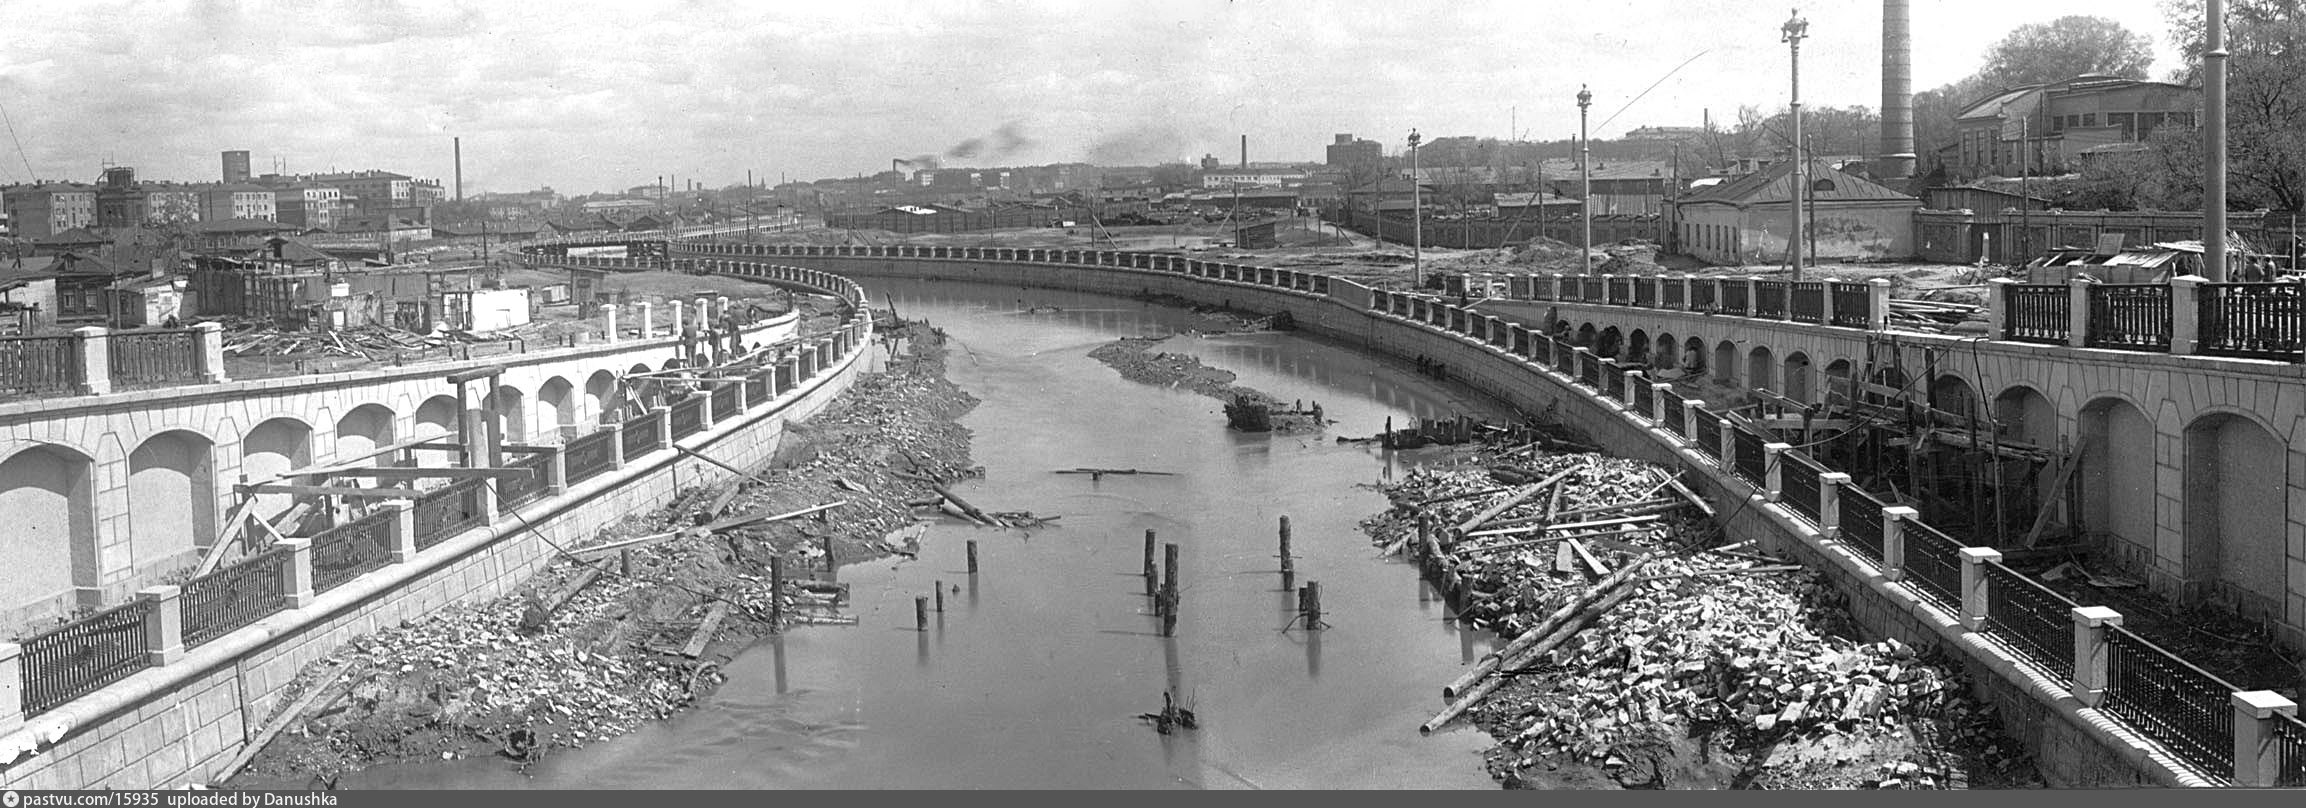 Какие города были в 1930 году. Река Яуза обмелела. Река Яуза Москва 50е. Москва-река обмелела 1930 год. Набережная Москвы реки Дорогомилово 1930.